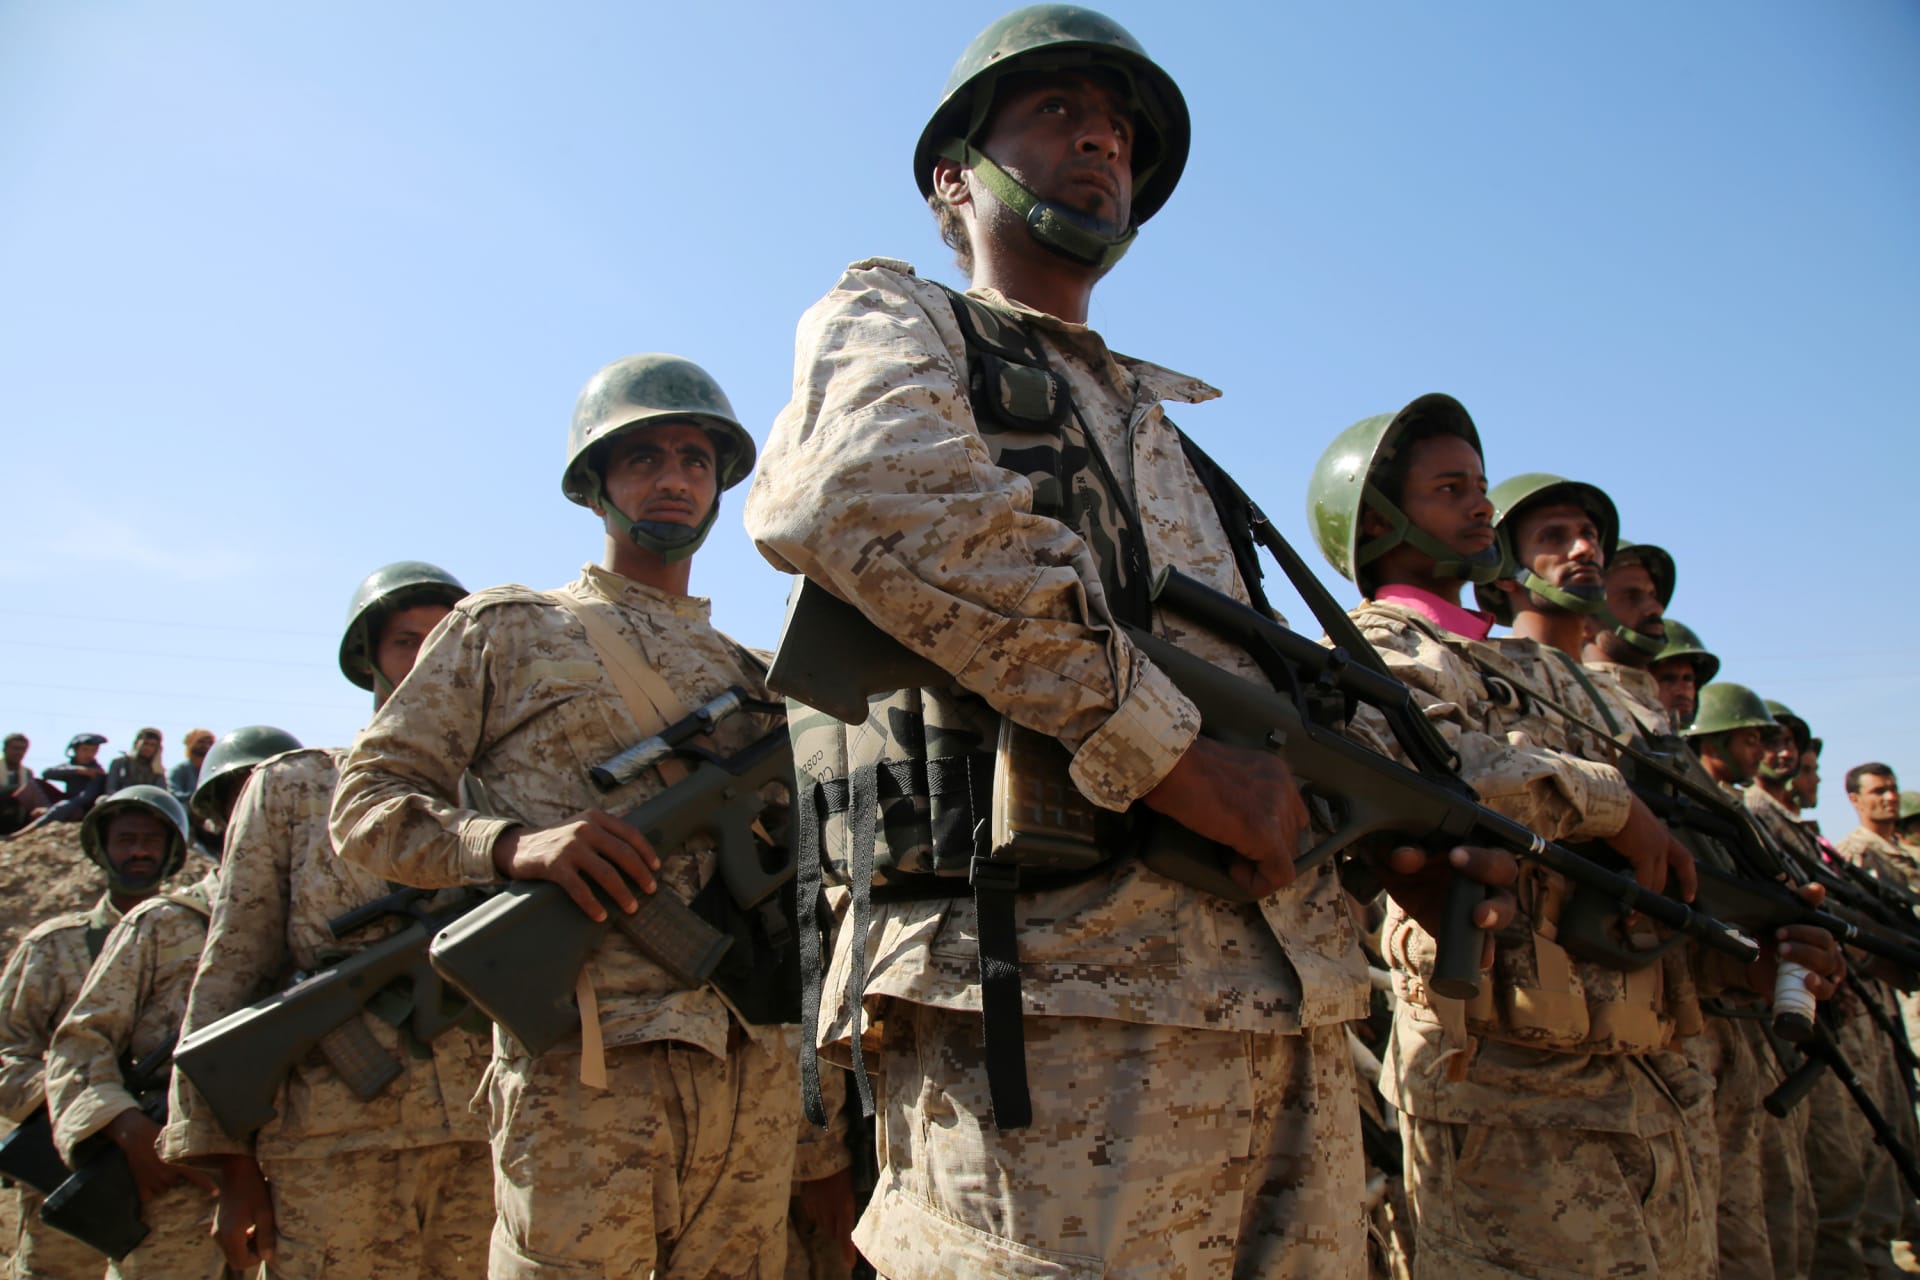 قوات يمنية تنفذ بدعم إماراتي وأمريكي عملية ضد القاعدة في اليمن